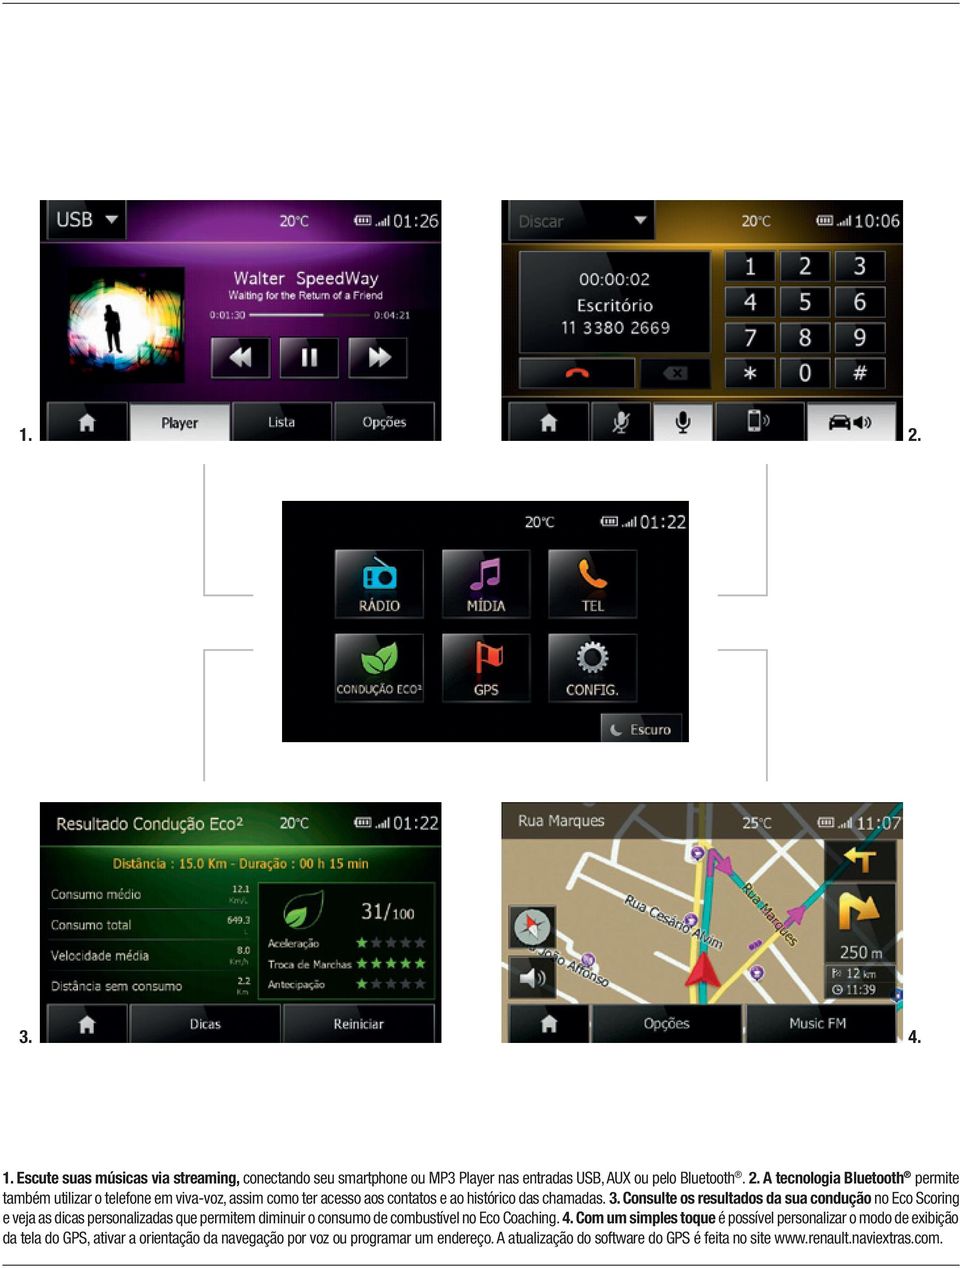 Com um simples toque é possível personalizar o modo de exibição da tela do GPS, ativar a orientação da navegação por voz ou programar um endereço.